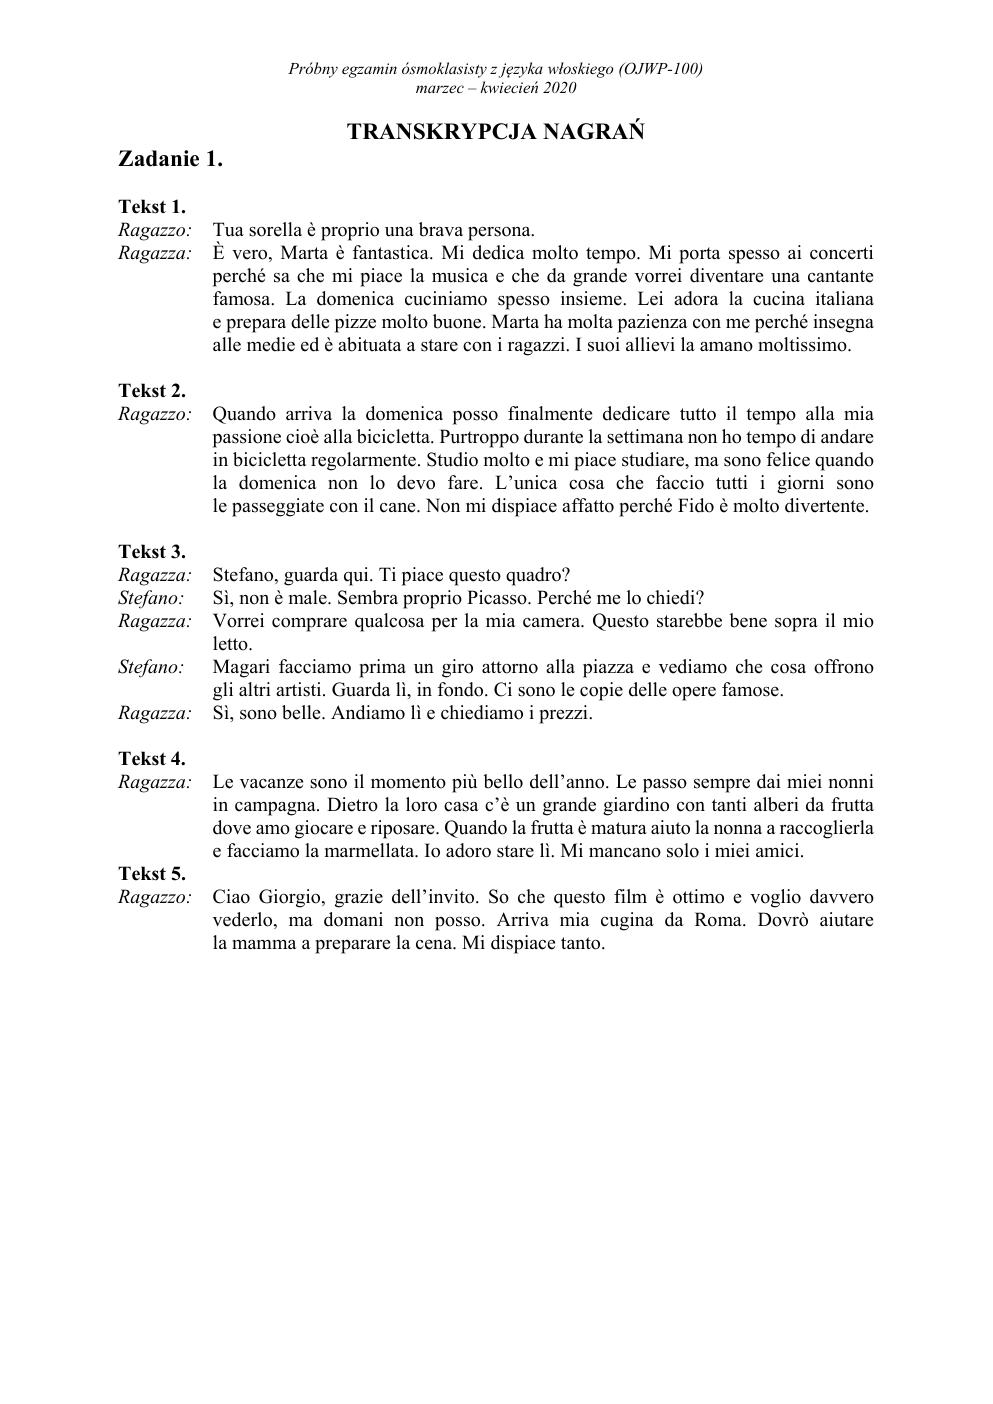 transkrypcja - włoski - egzamin ósmoklasisty 2020 próbny-1